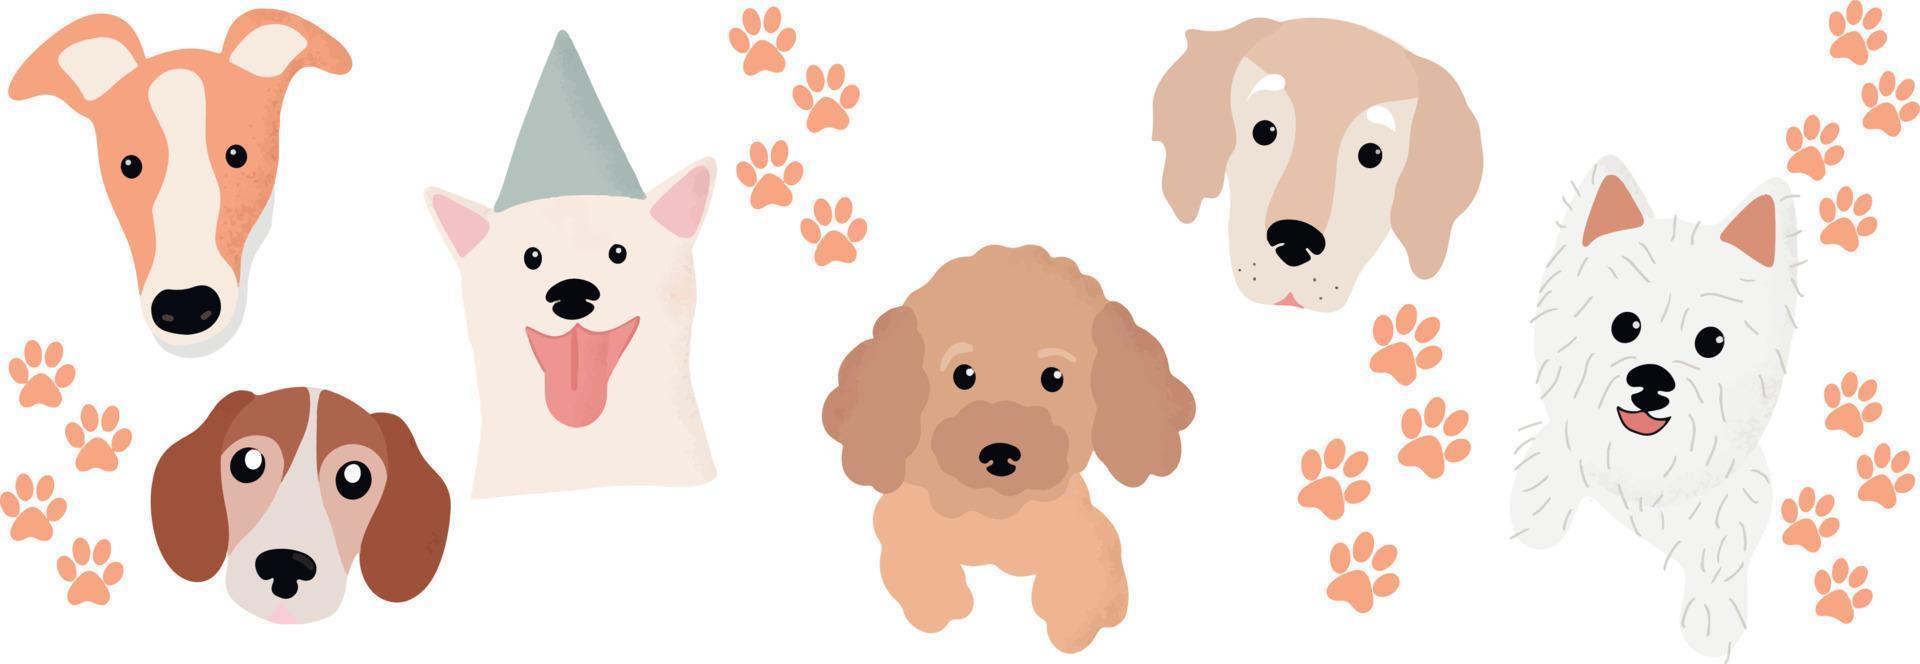 pequeños perros lindos. ilustración infantil, cumpleaños, plantilla de vacaciones. caras graciosas animales. vector